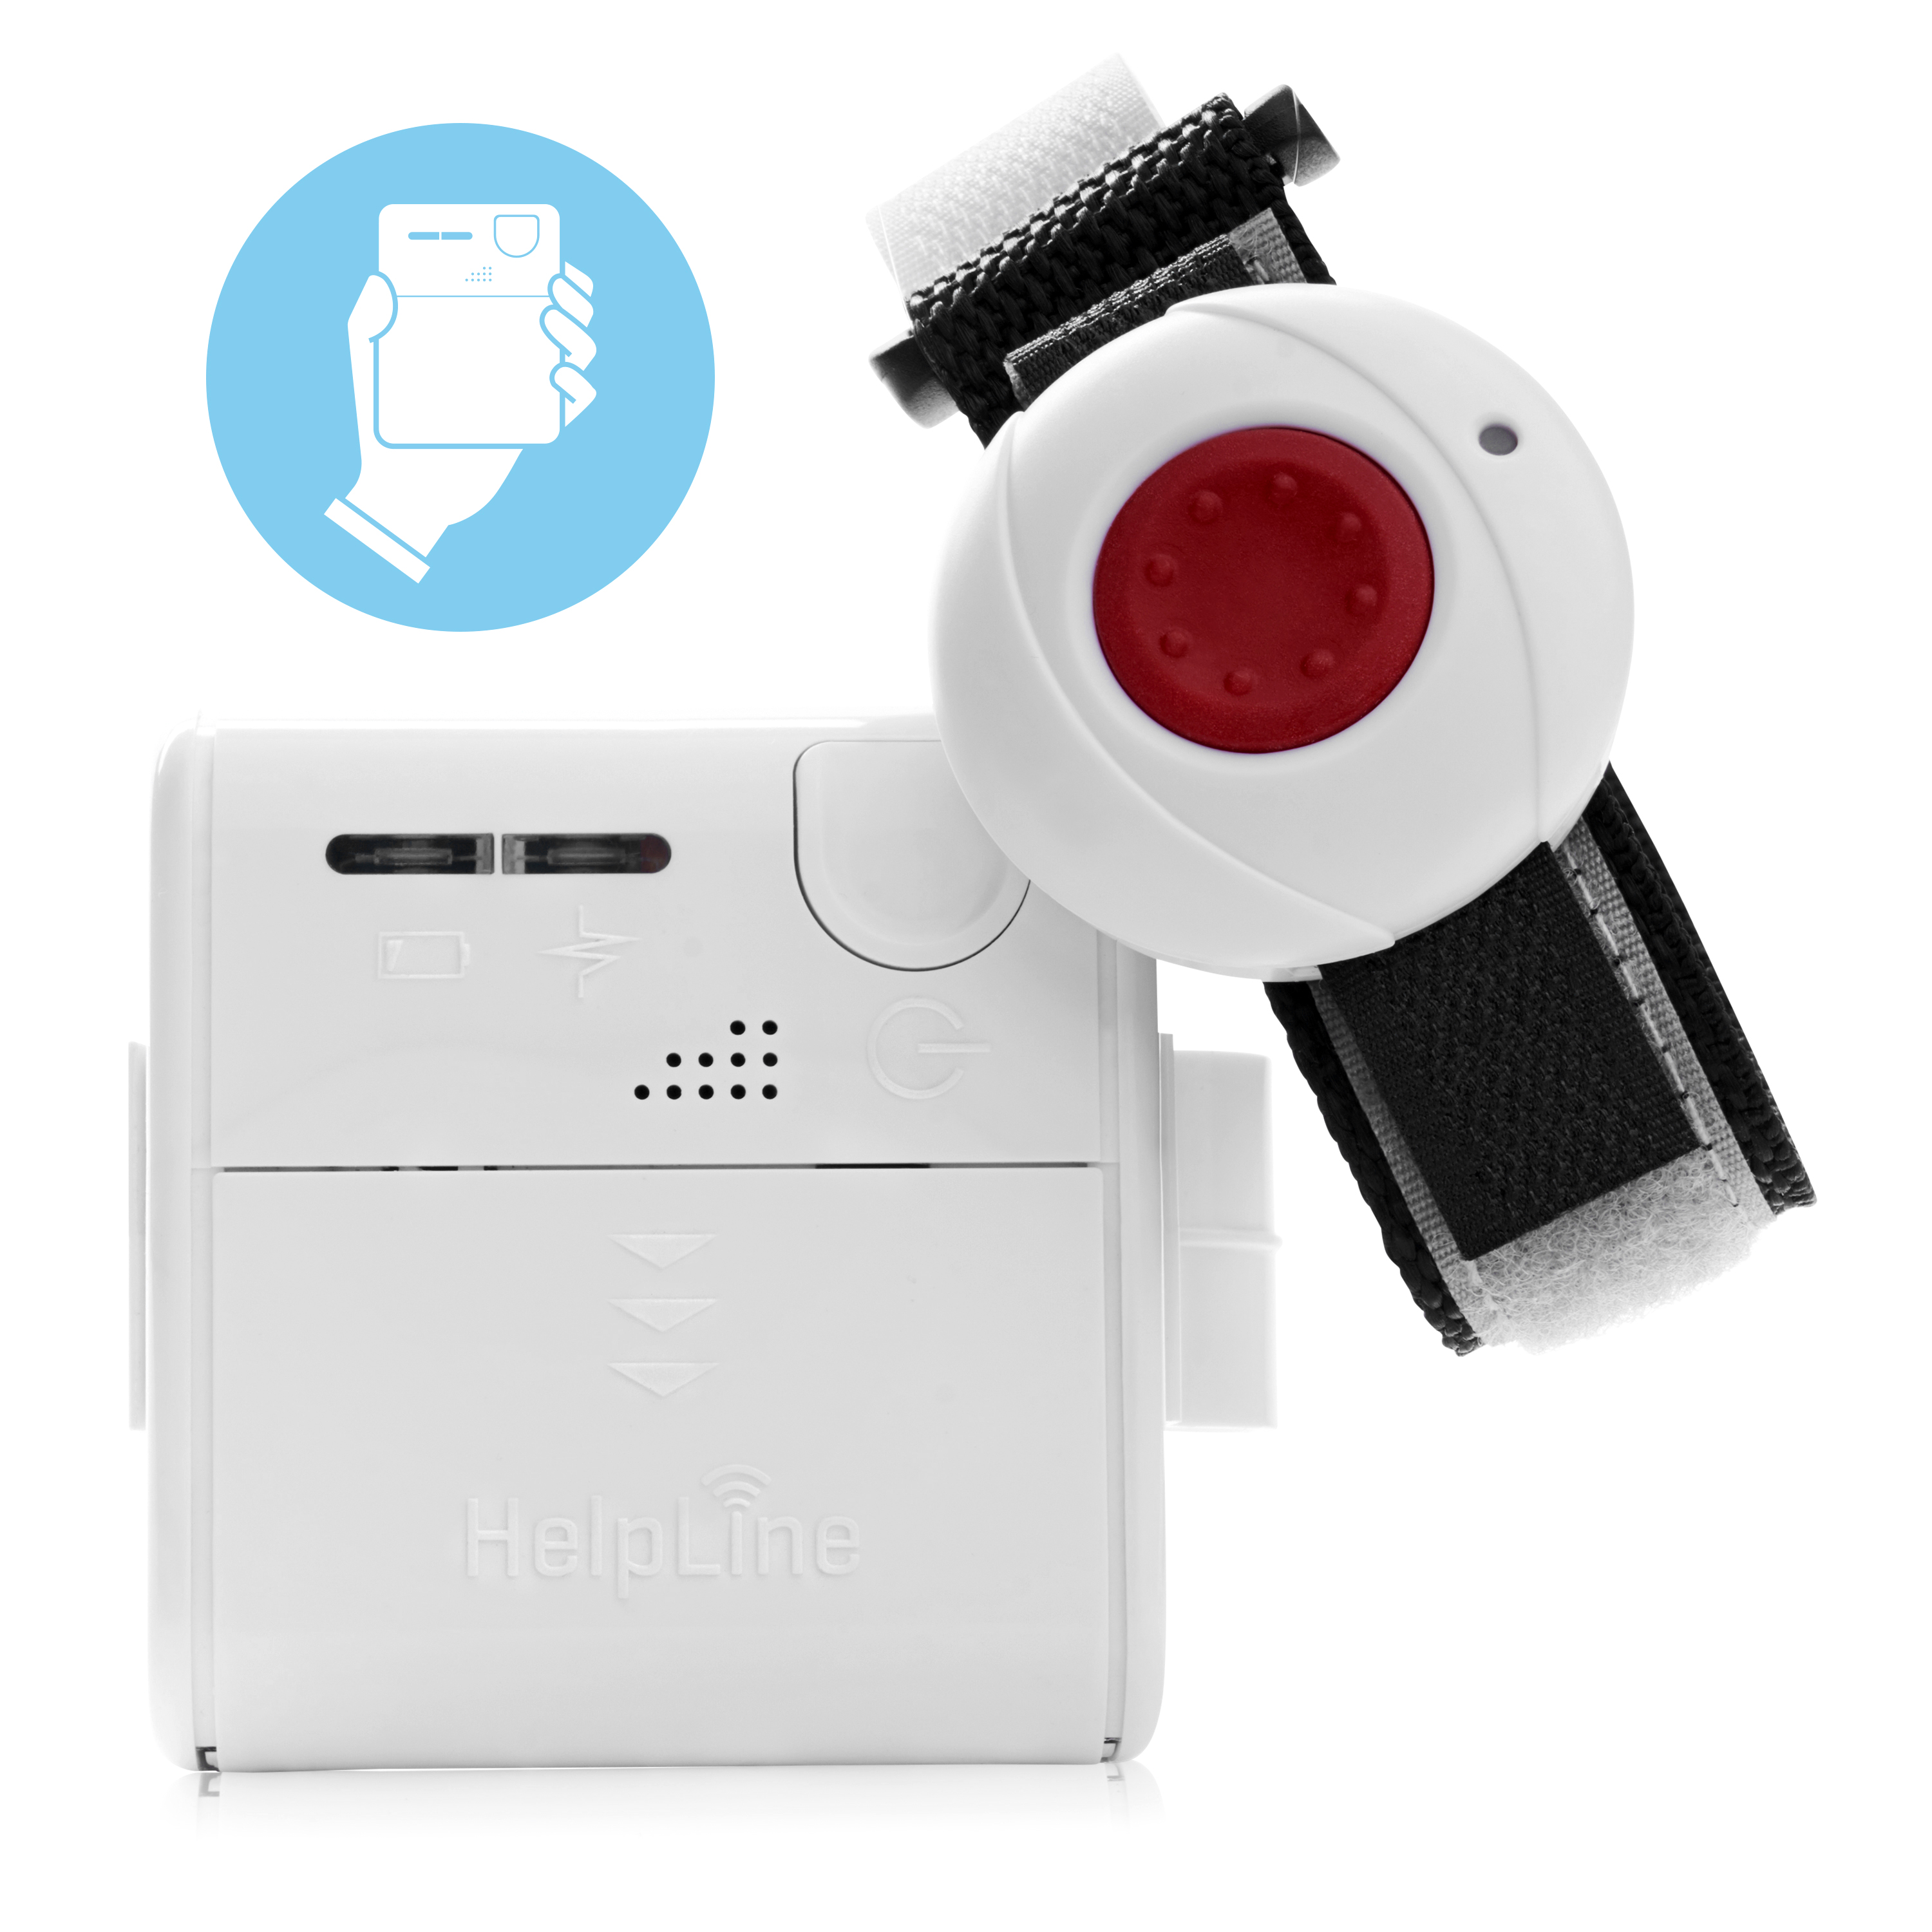 HELPLINE Mini: Mobiler Hausnotruf mit Armbandsender und Ladesystem